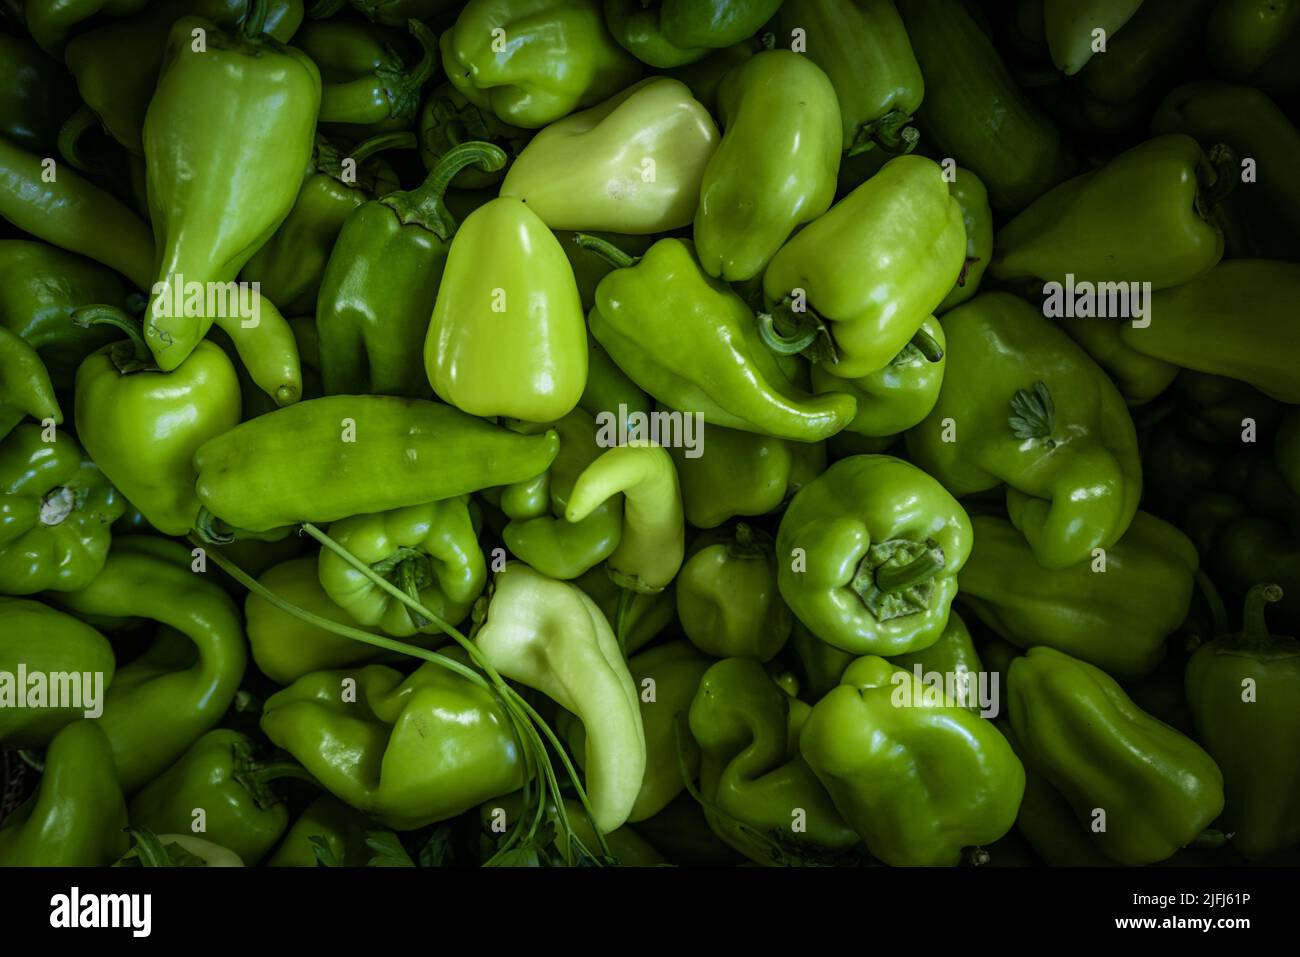 Full Frame Shot Of Green Bell Peppers Stock Photo